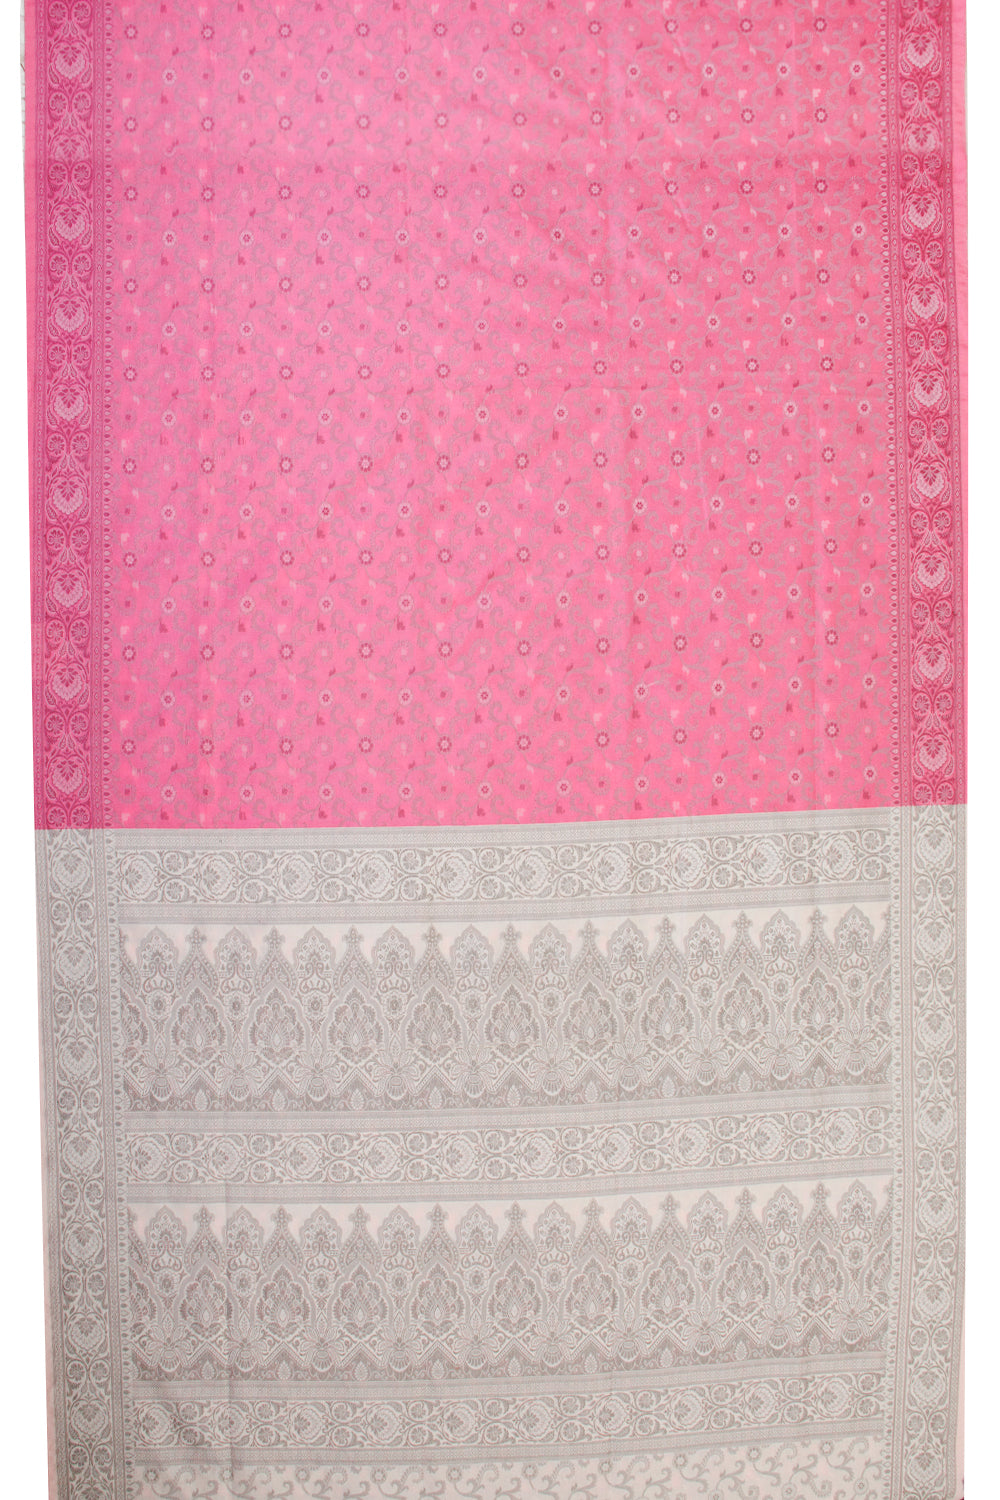 Pink Handloom Himroo Silk Cotton Saree - Avishya